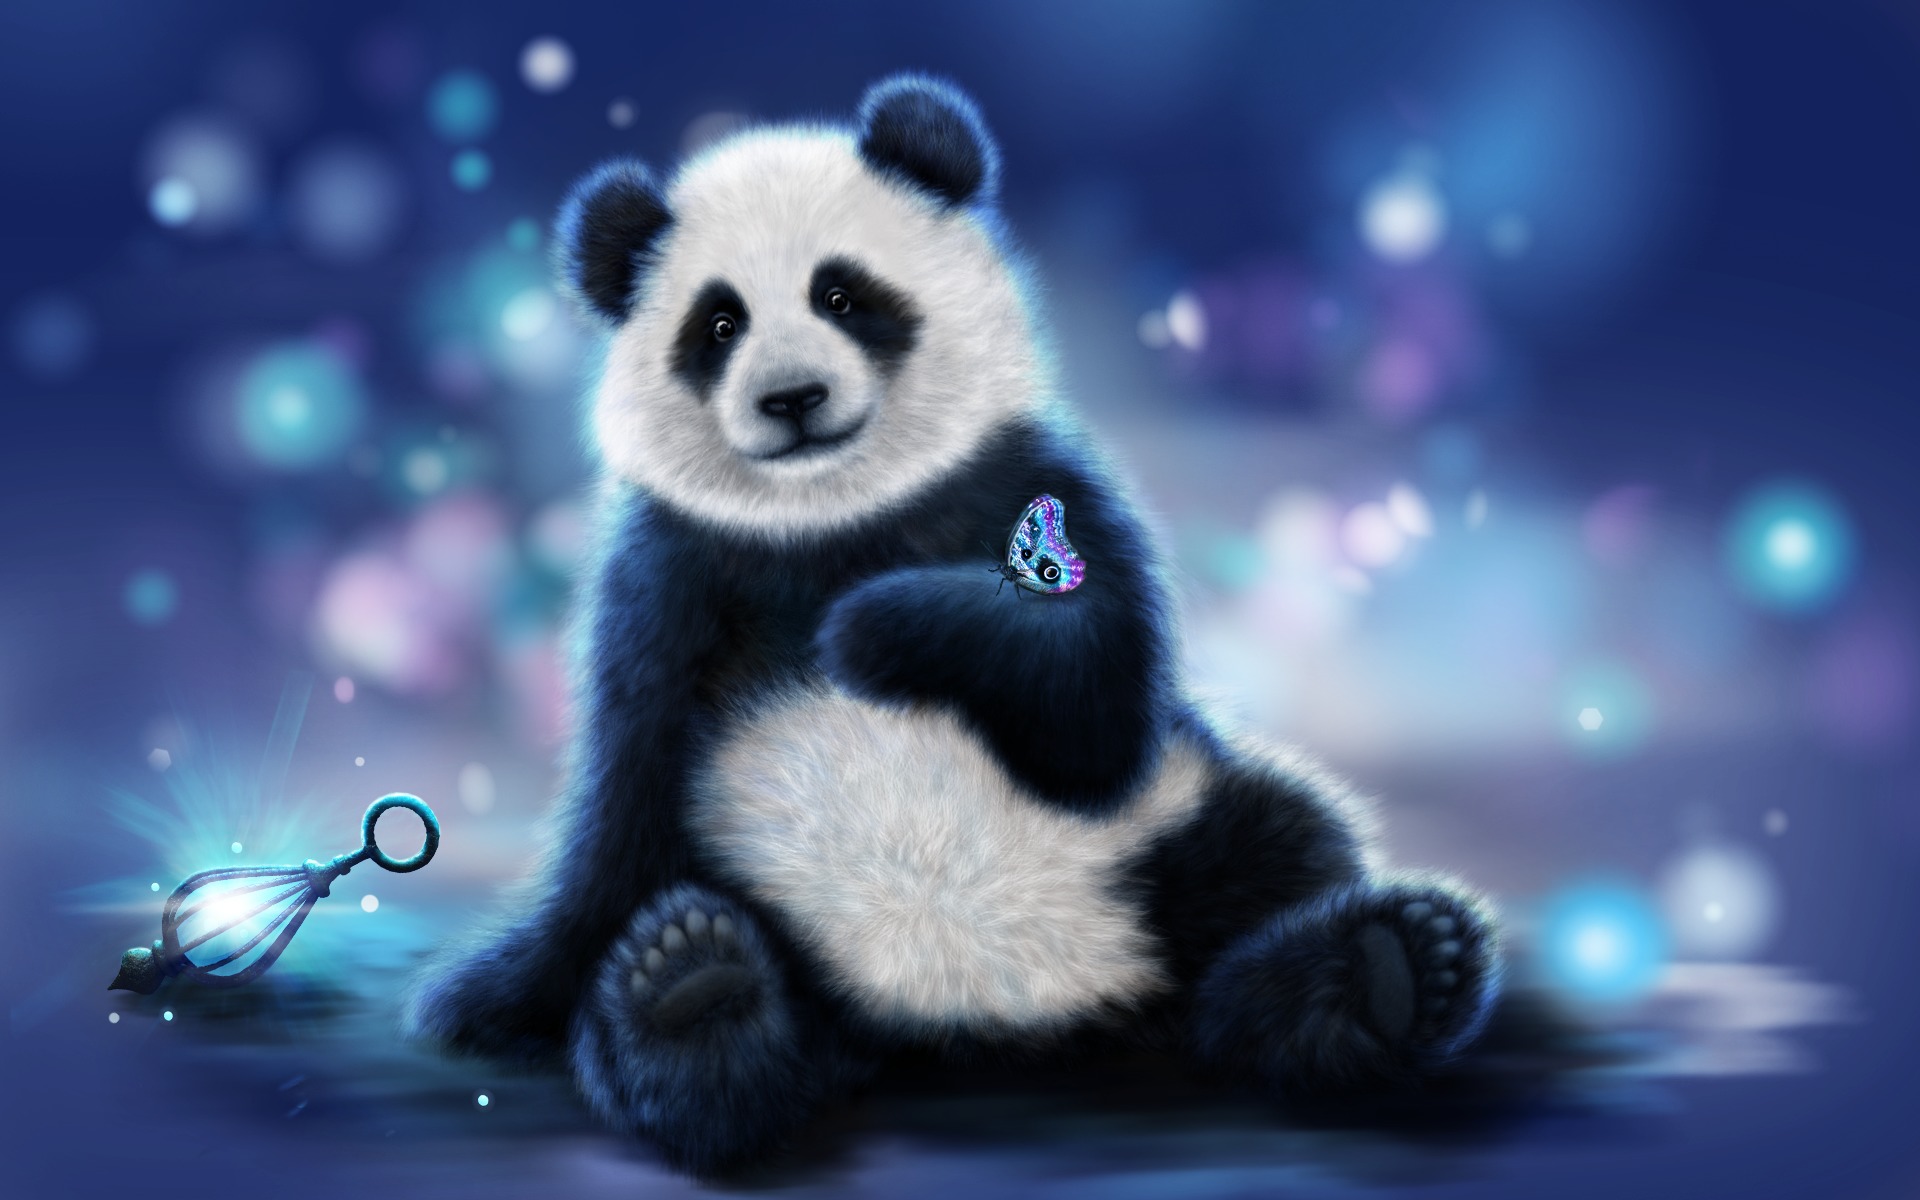 Panda Images - Free Download on Freepik